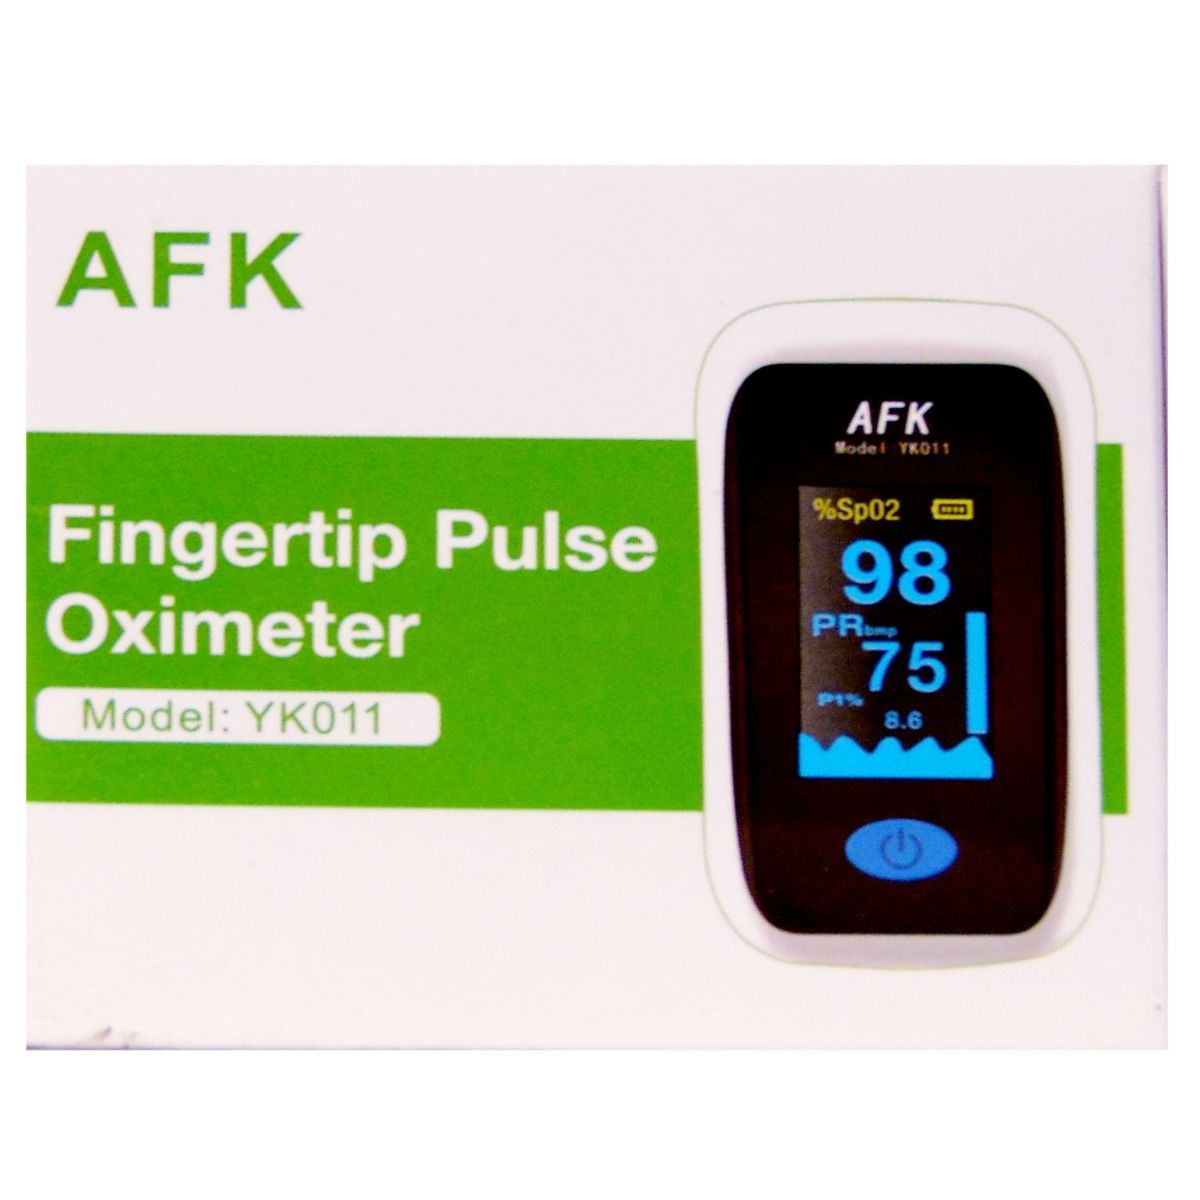 Buy AFK YK011 Fingertip Pulse Oximeter, 1 Count Online